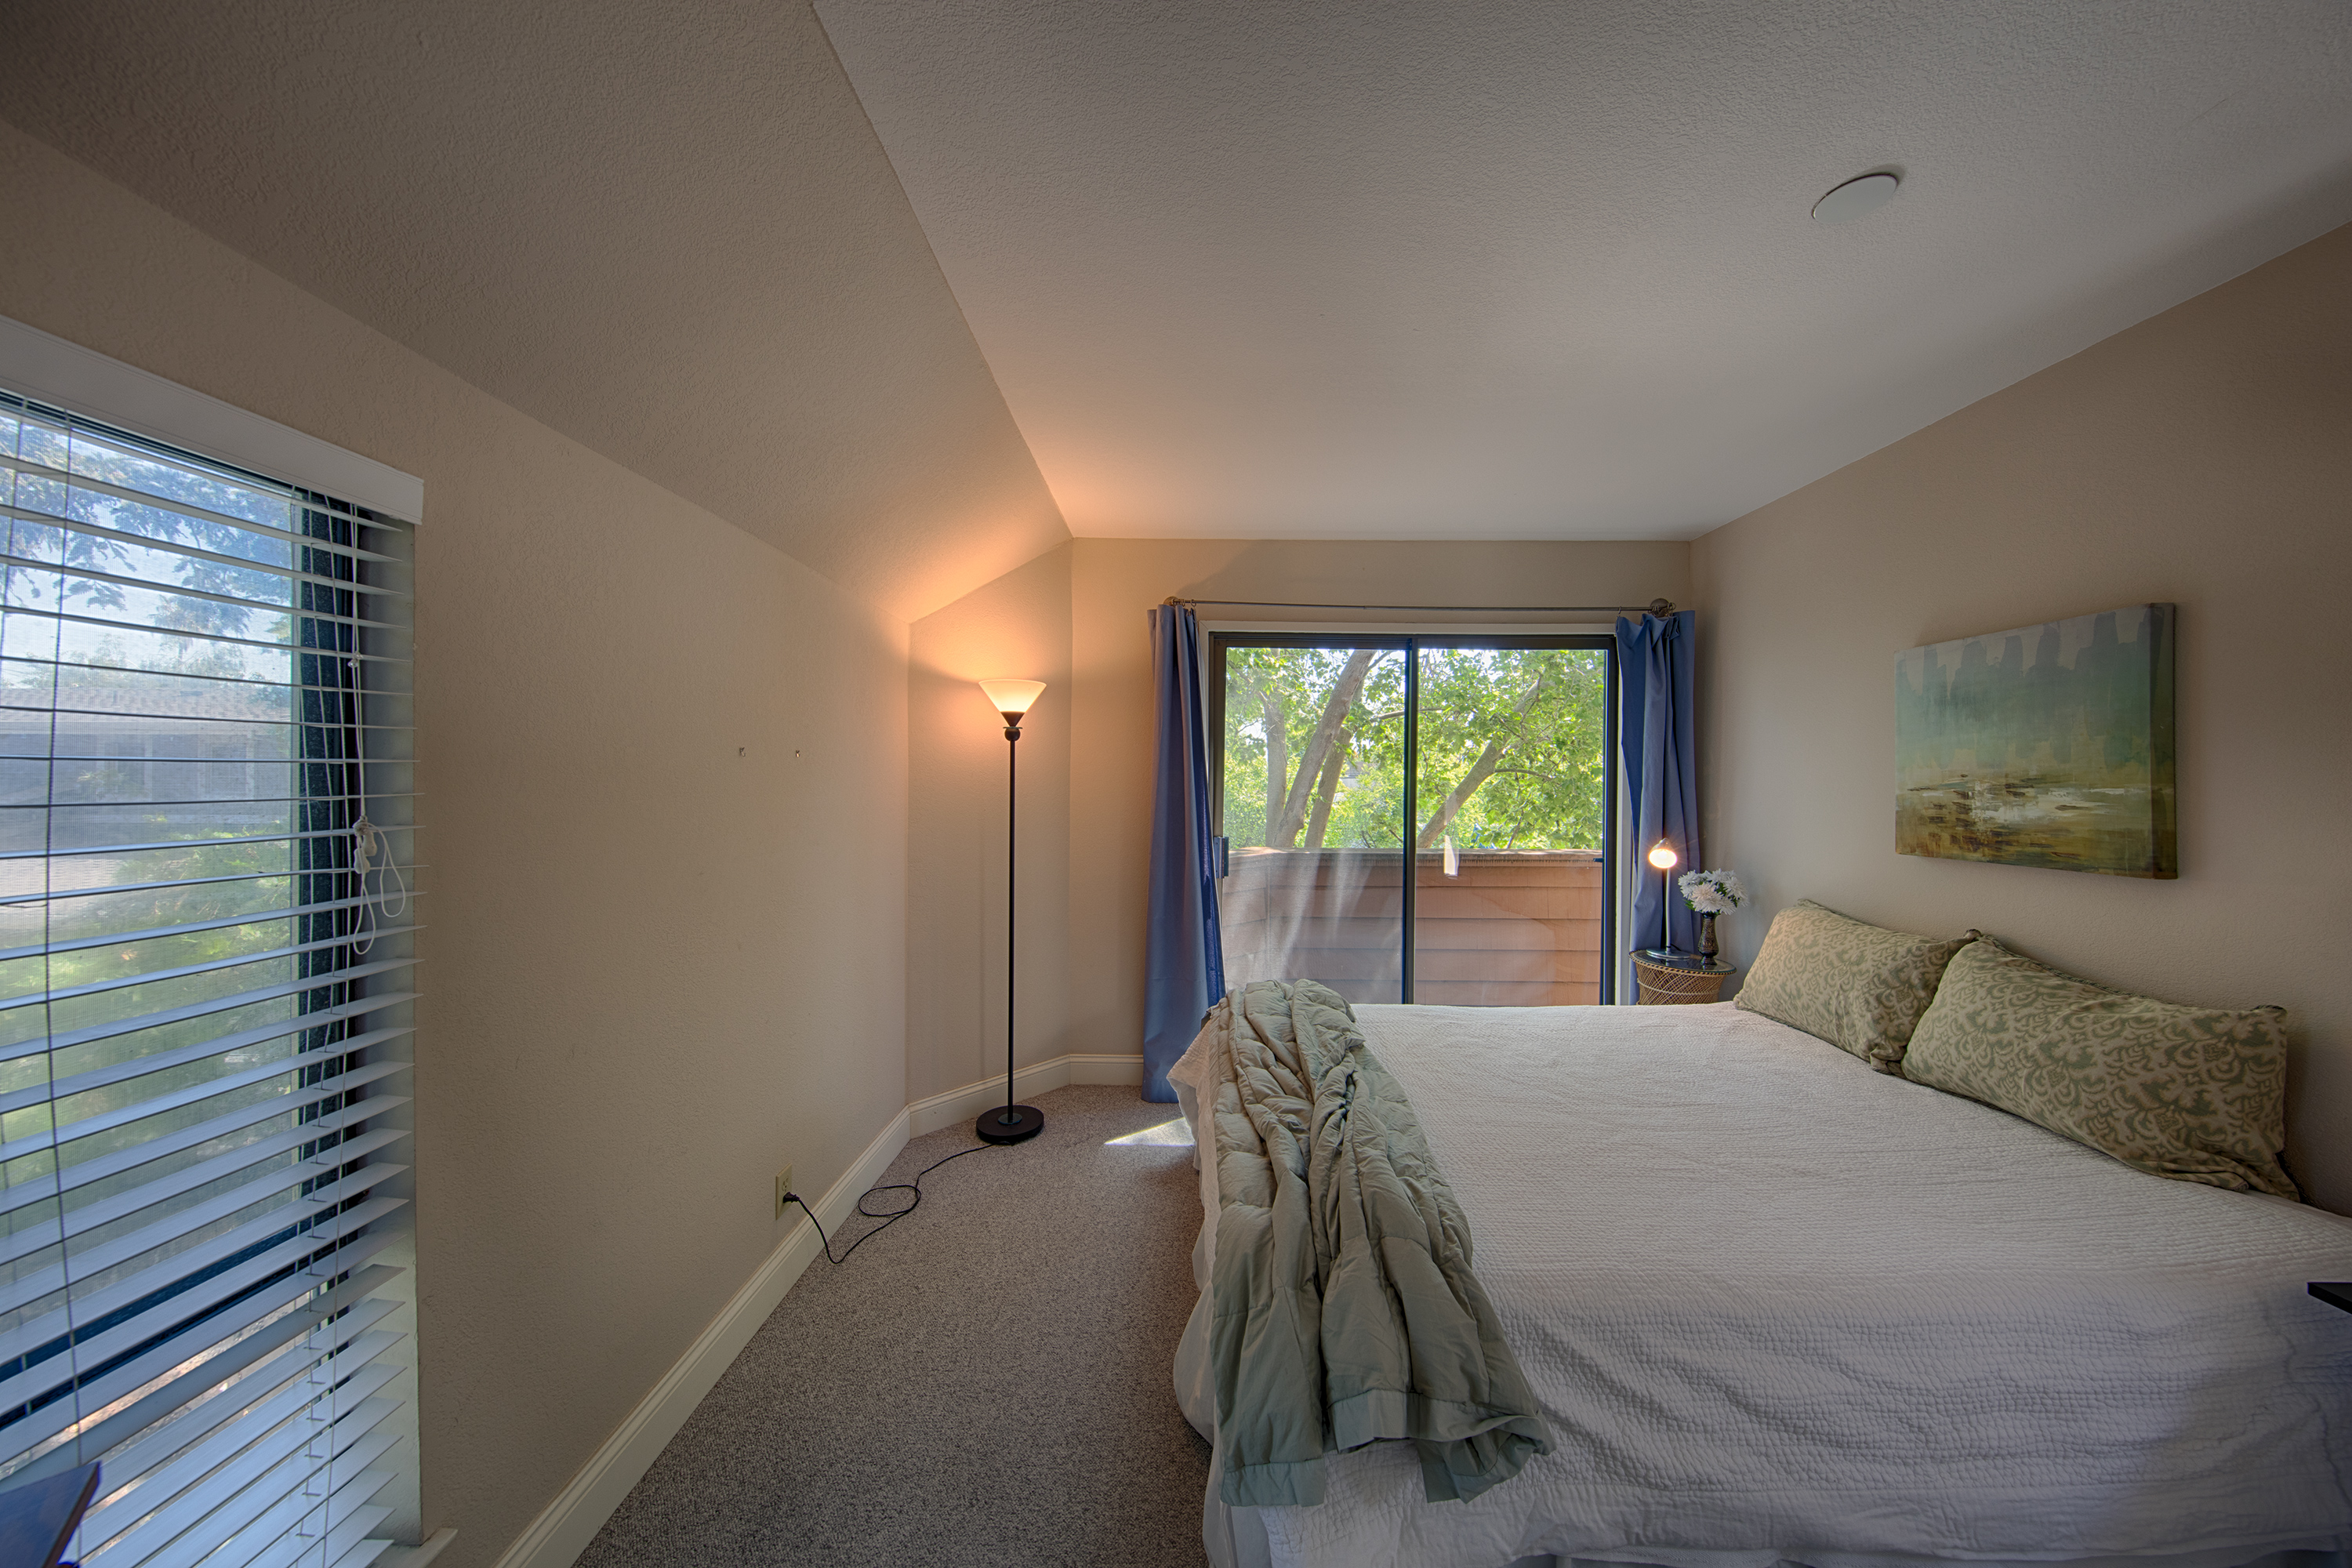 229 High St, Palo Alto 94301 - Guest Suite Bed1 (D)